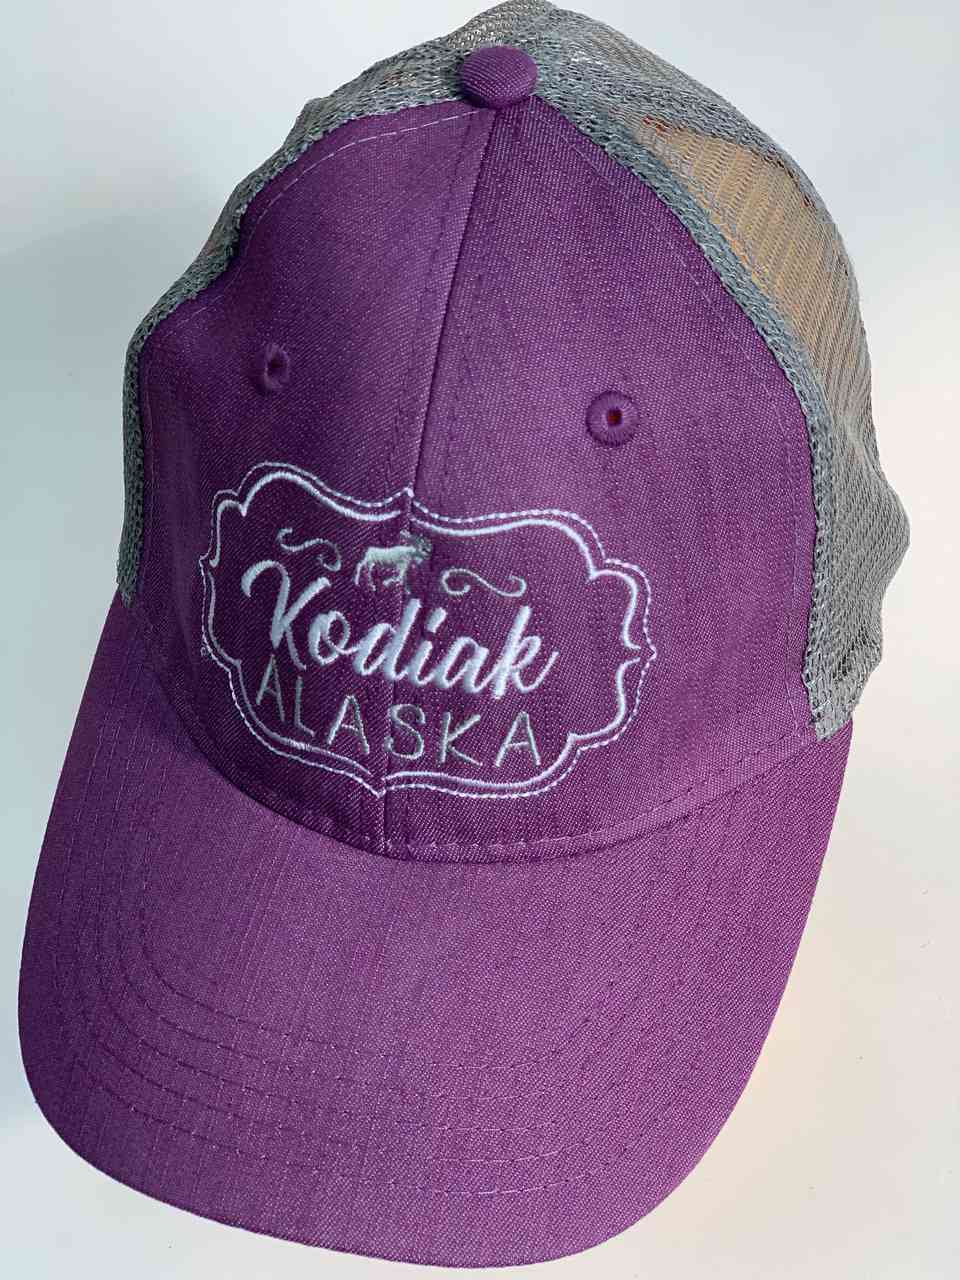 Сиреневая бейсболка с сеткой Kodiak Alaska